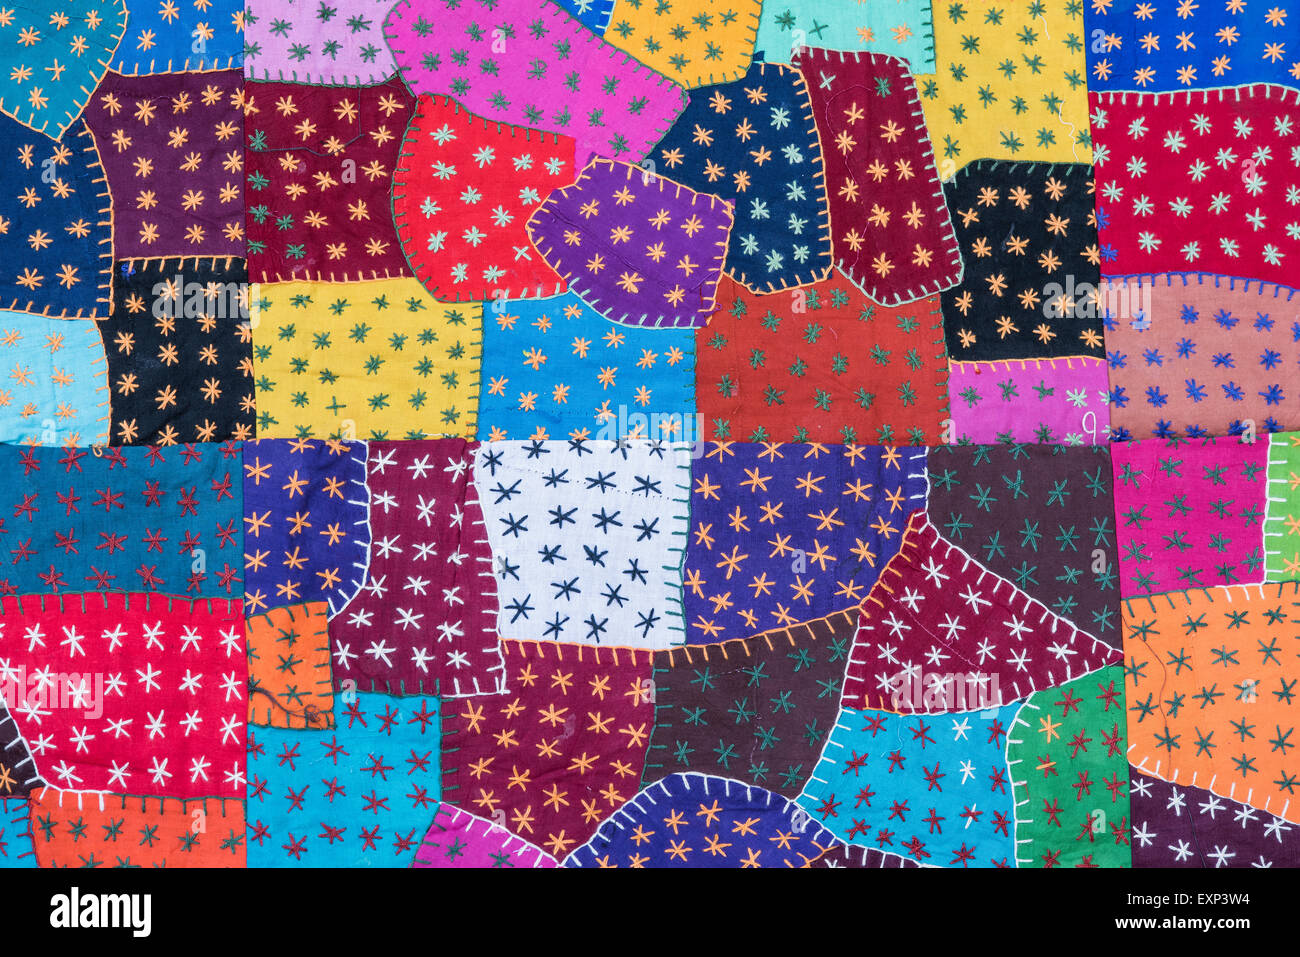 Tapisserie de patchs colorés, détail, Rajasthan, Inde Banque D'Images